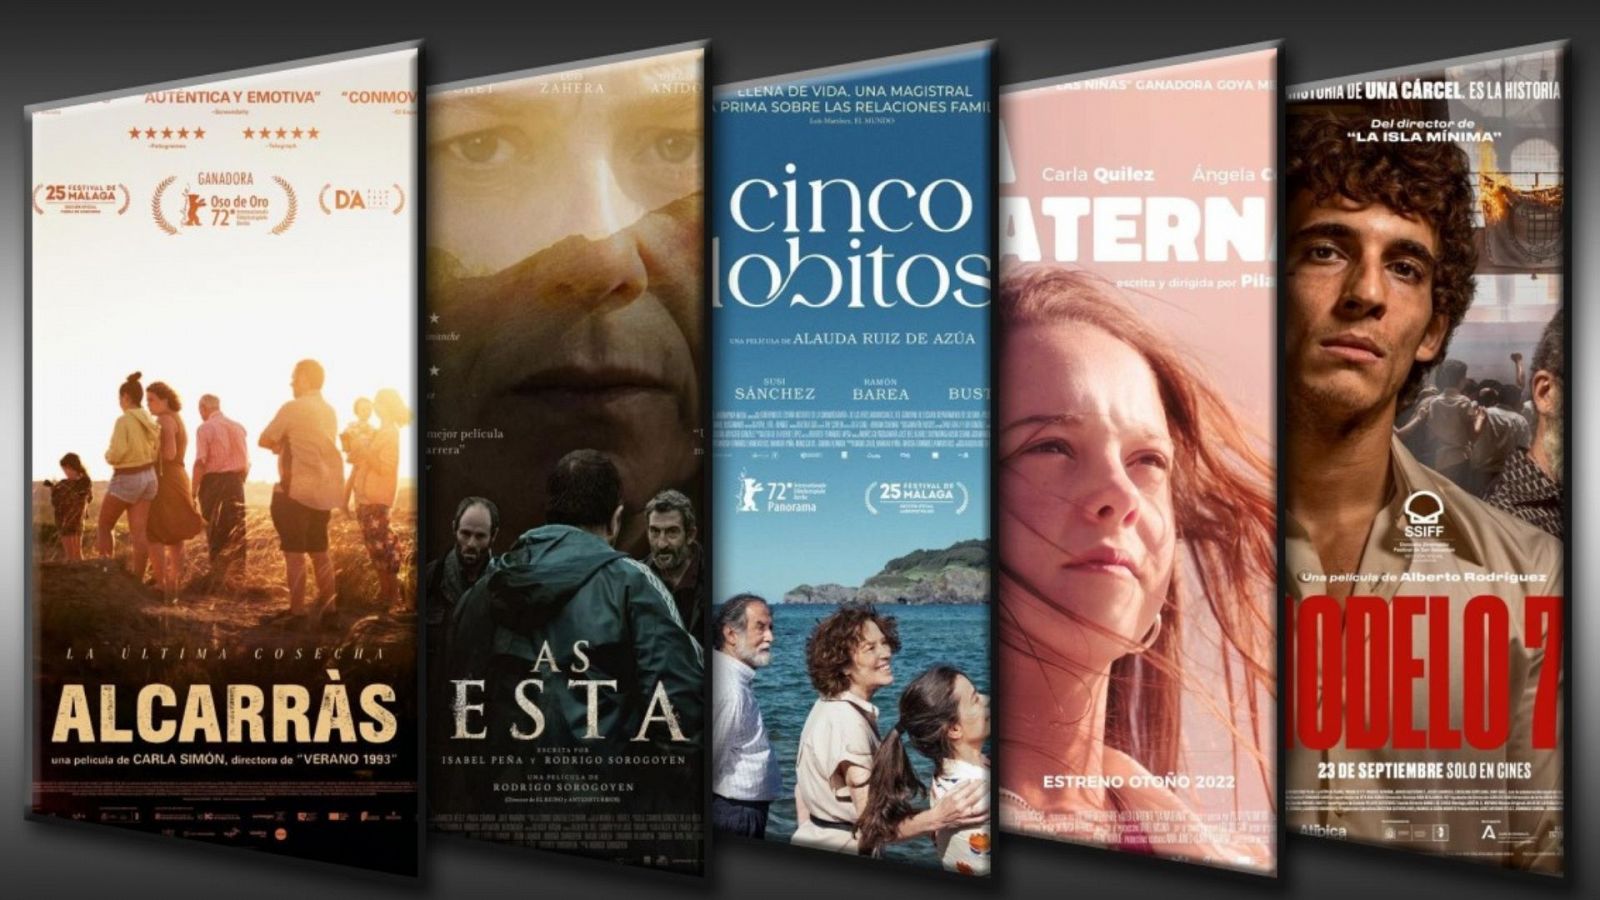 Premios Goya 2023 - ¿Cuál será la mejor película según Yolanda Flores? - Ver ahora